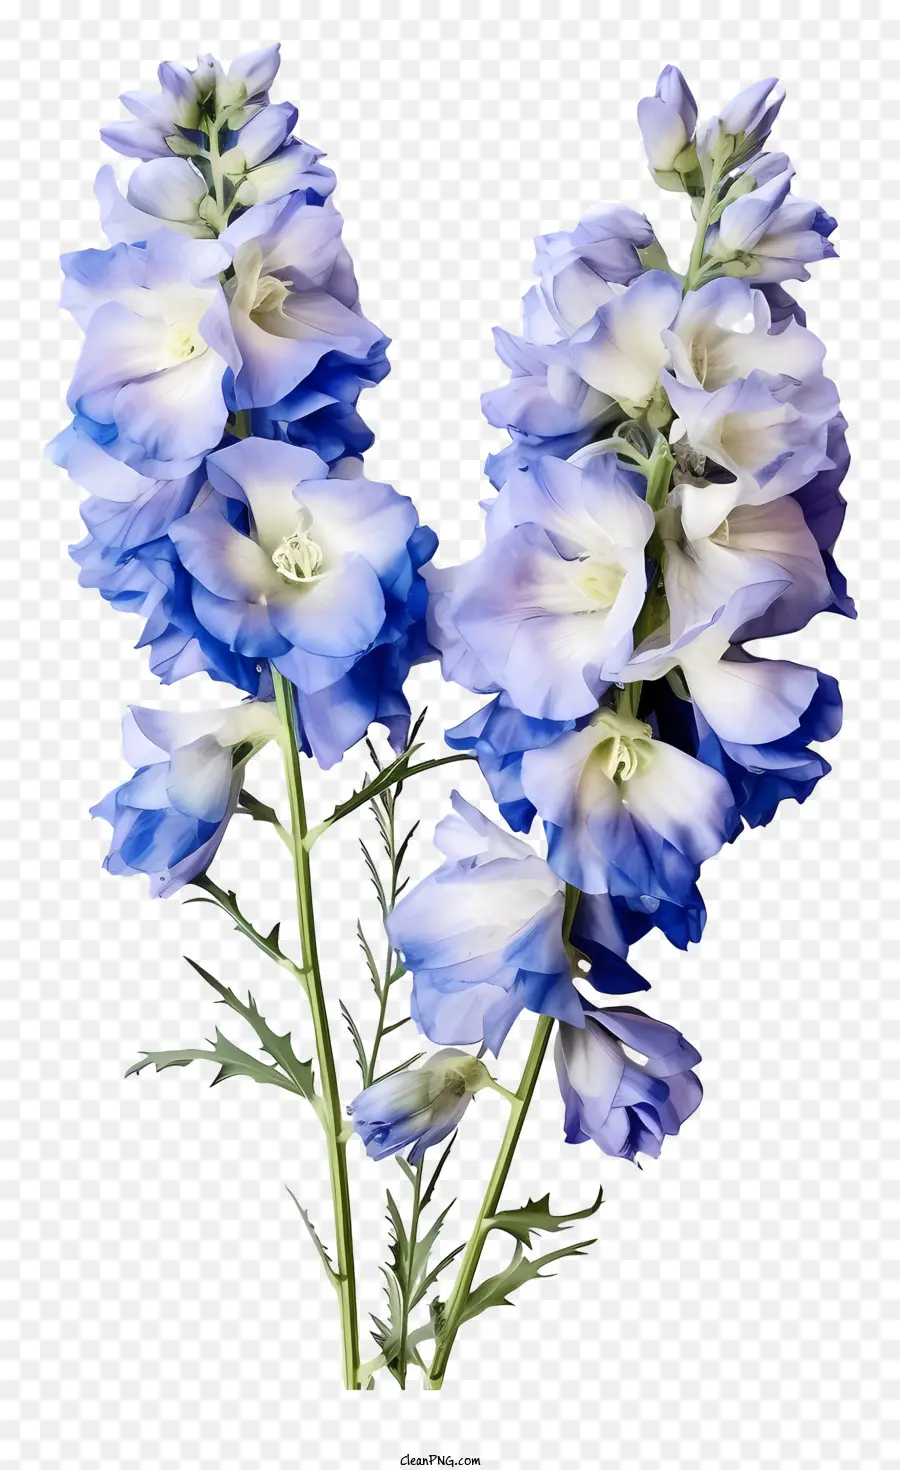 fiore blu - Fiore blu e bianco circondato da foglie verdi